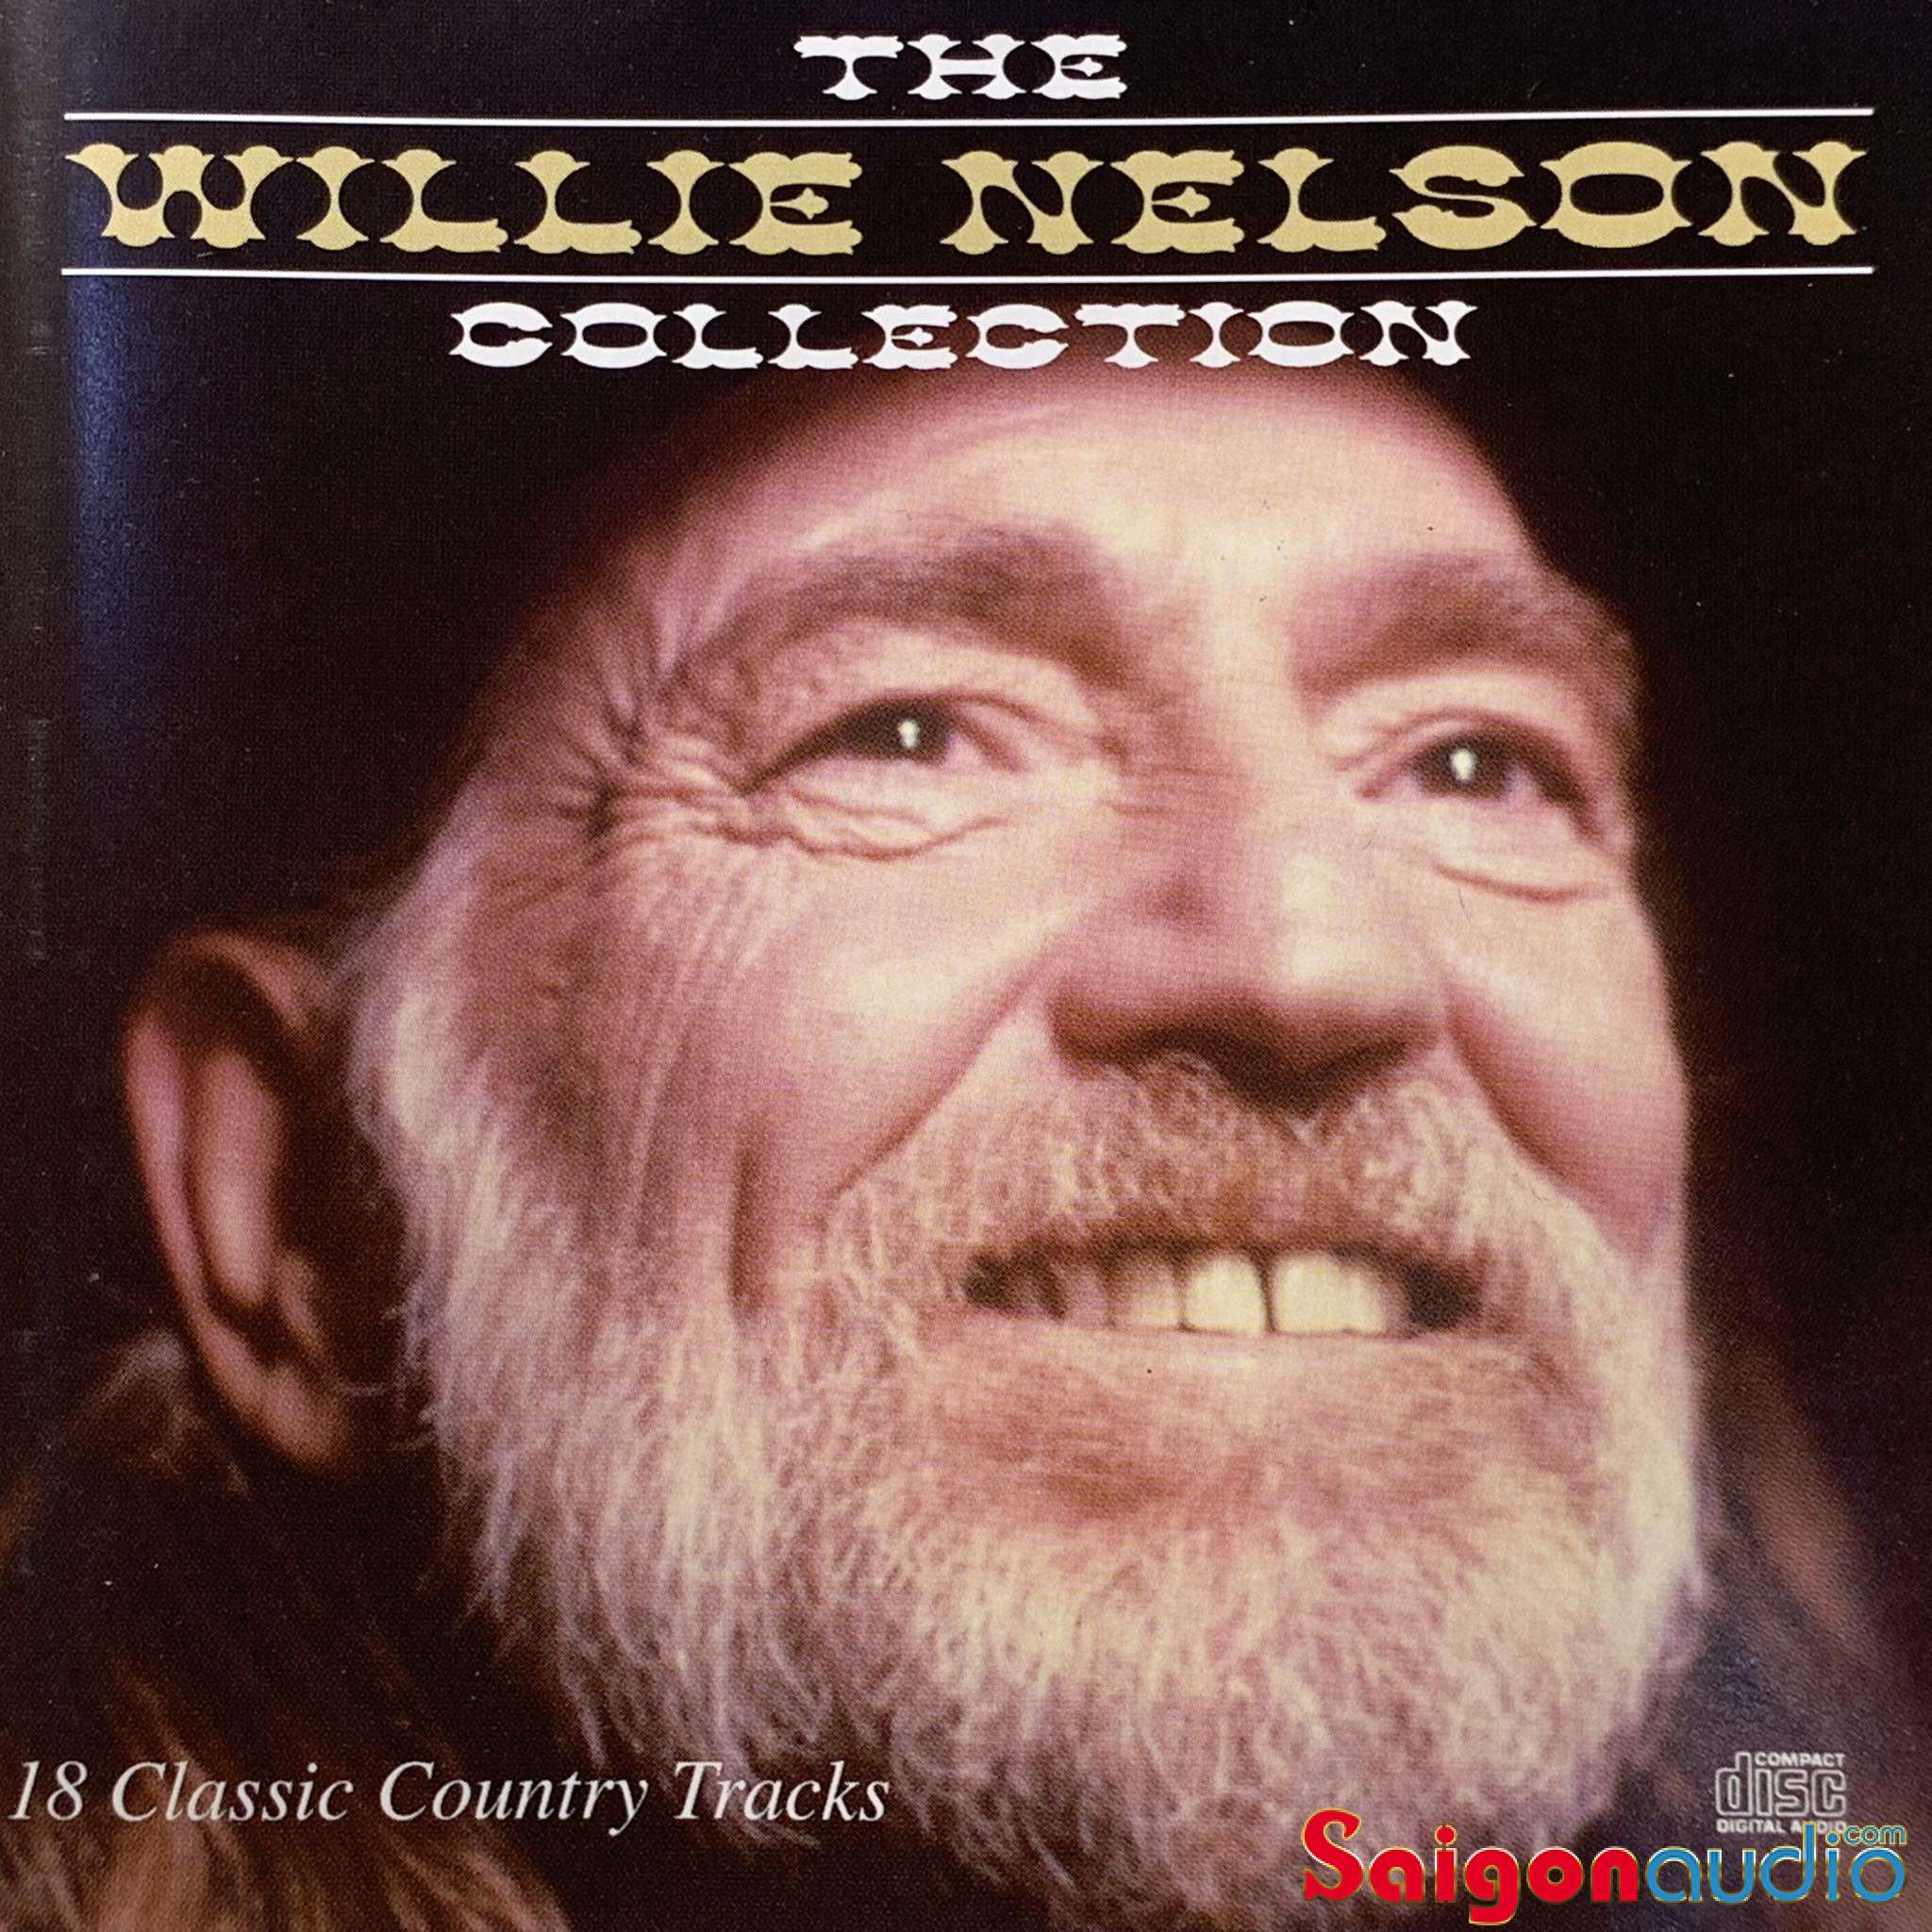 Đĩa CD gốc nhạc country The Willie Nelson Collection (Free ship khi mua 2 đĩa CD cùng hoặc khác loại)